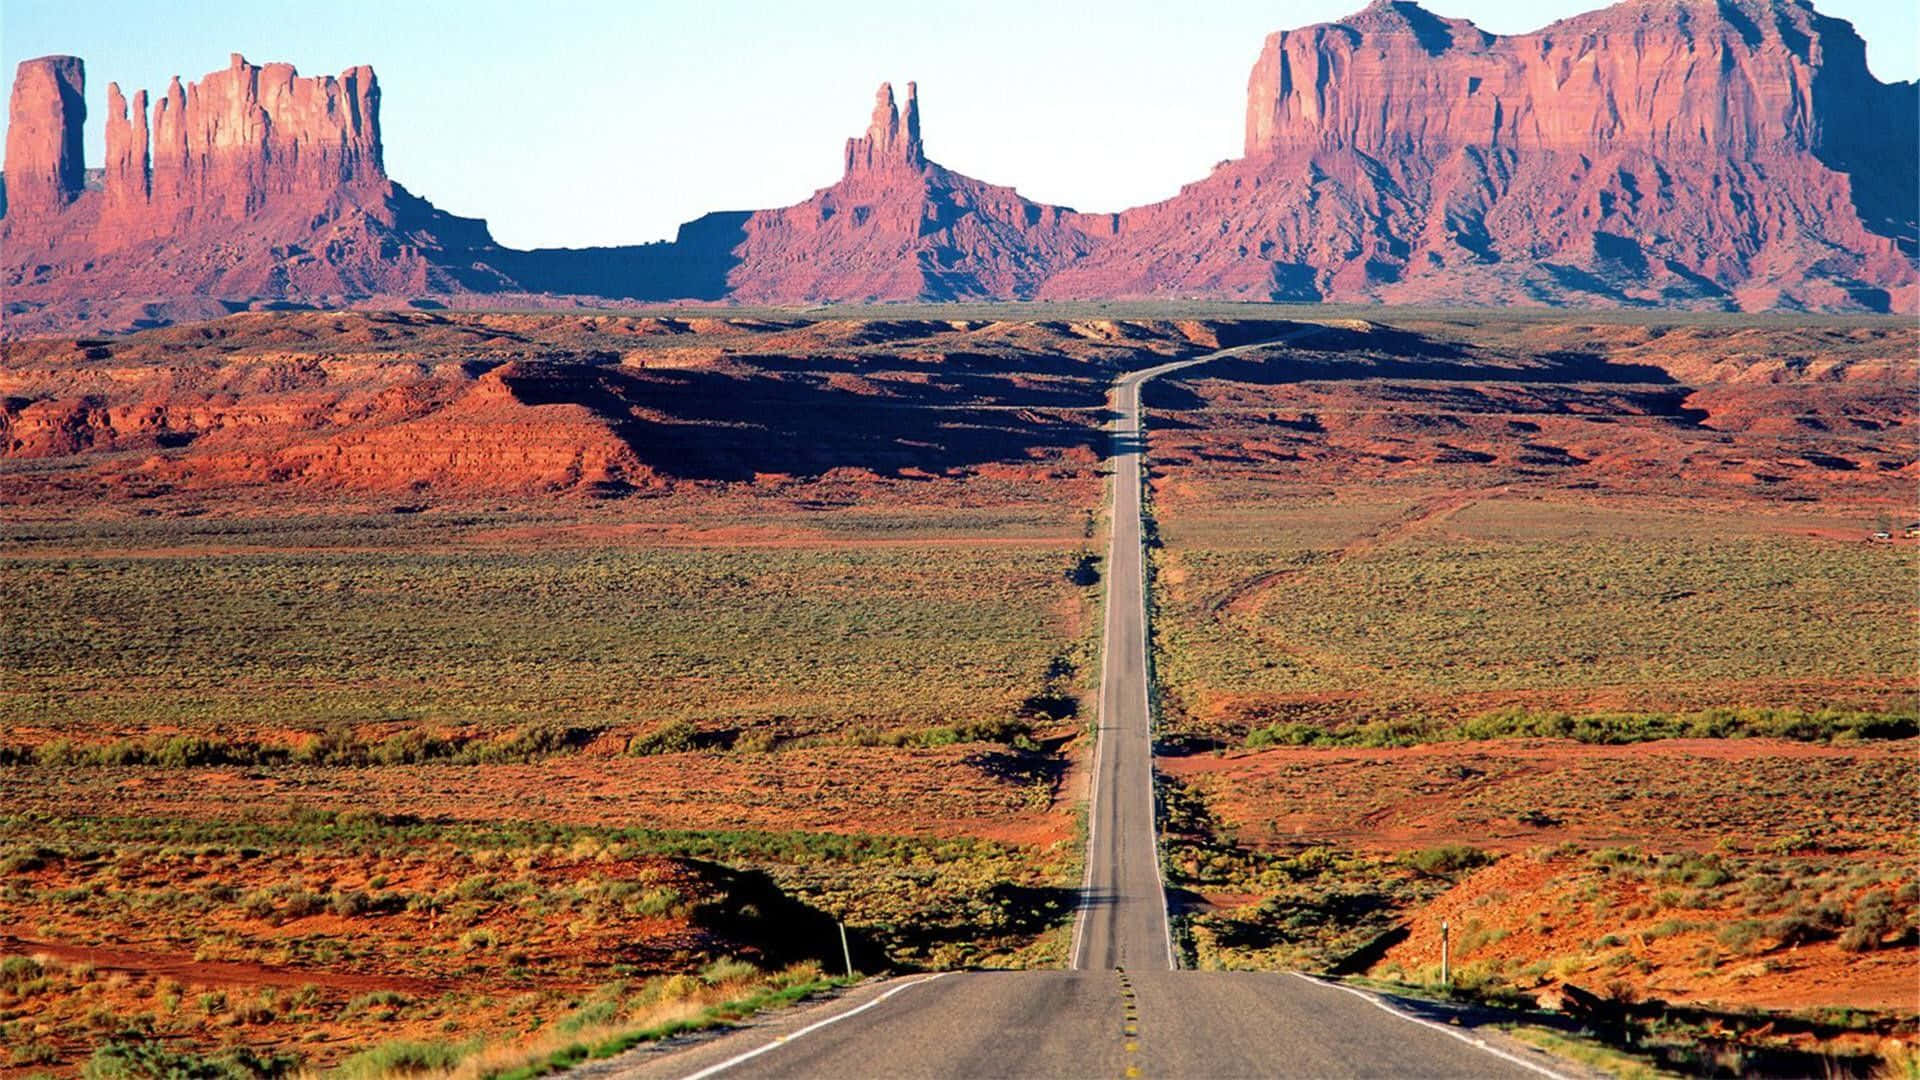 Tag på tur til den fantastiske ørkenen i Arizona!